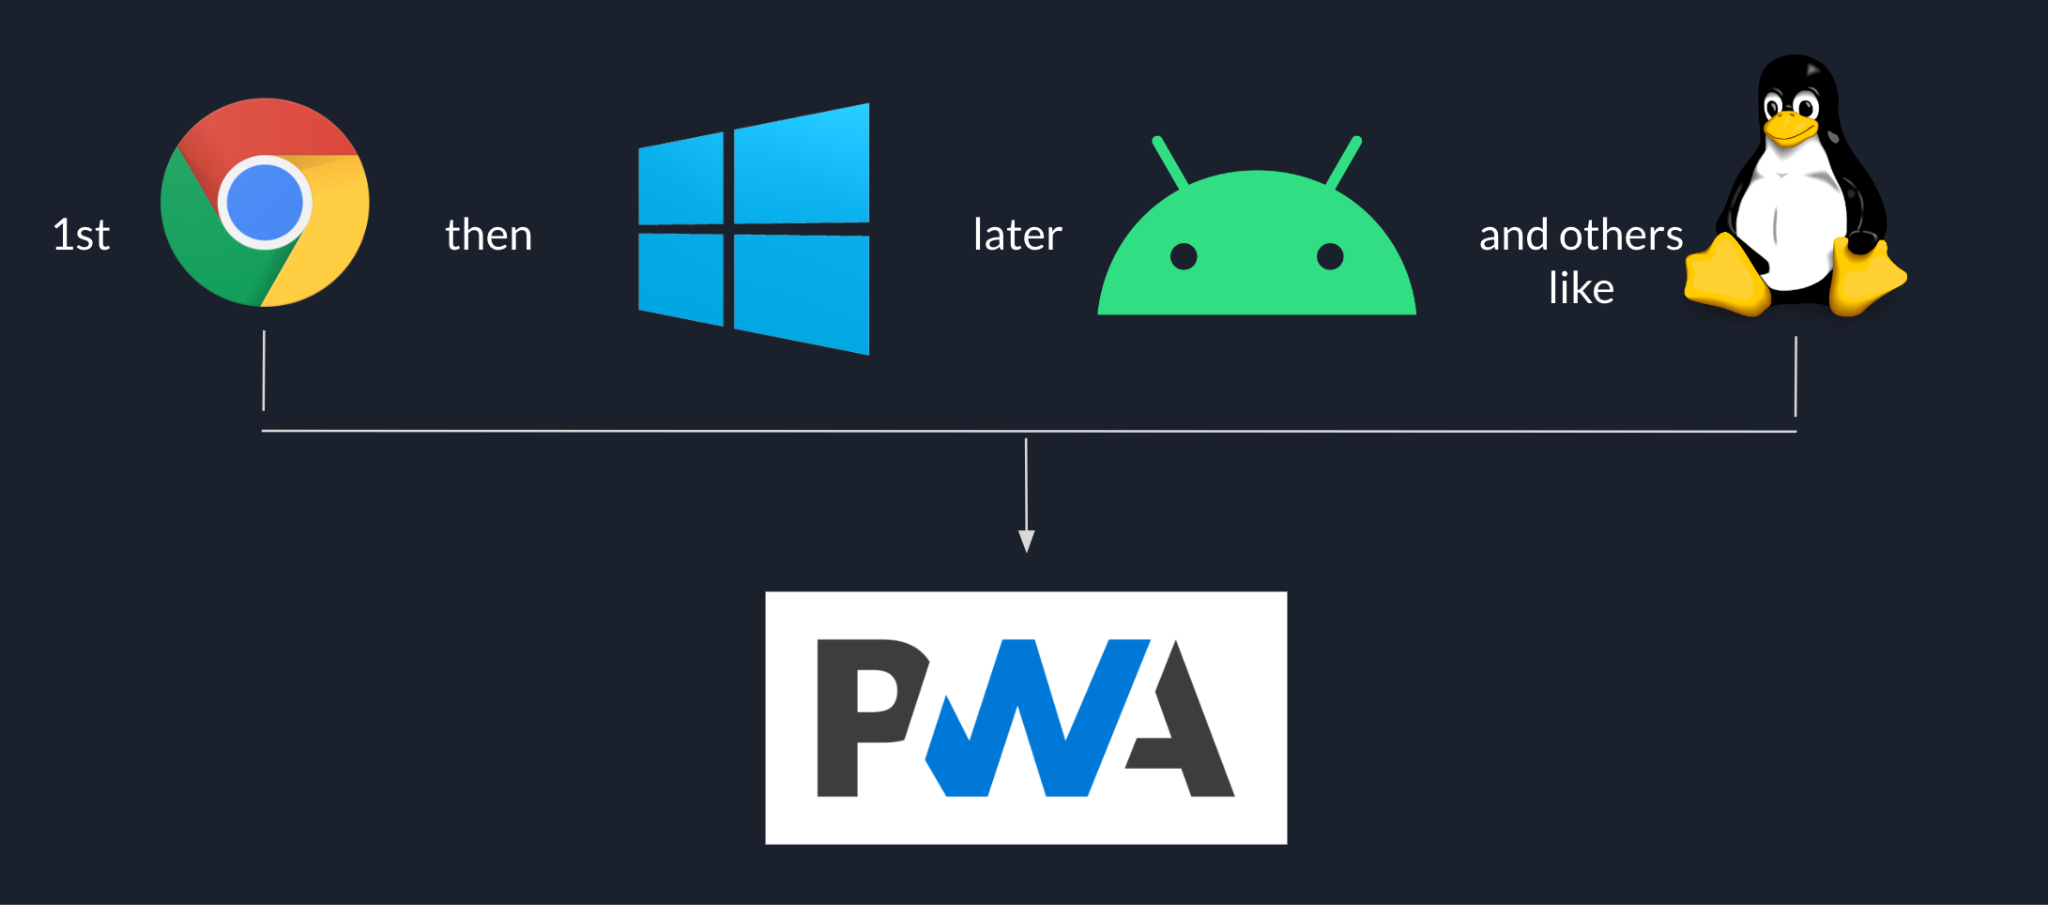 توالی عرضه Goodnotes با Chrome شروع می‌شود، سپس ویندوز، سپس اندروید، و پلتفرم‌های دیگر مانند لینوکس در پایان، همه بر اساس PWA هستند.